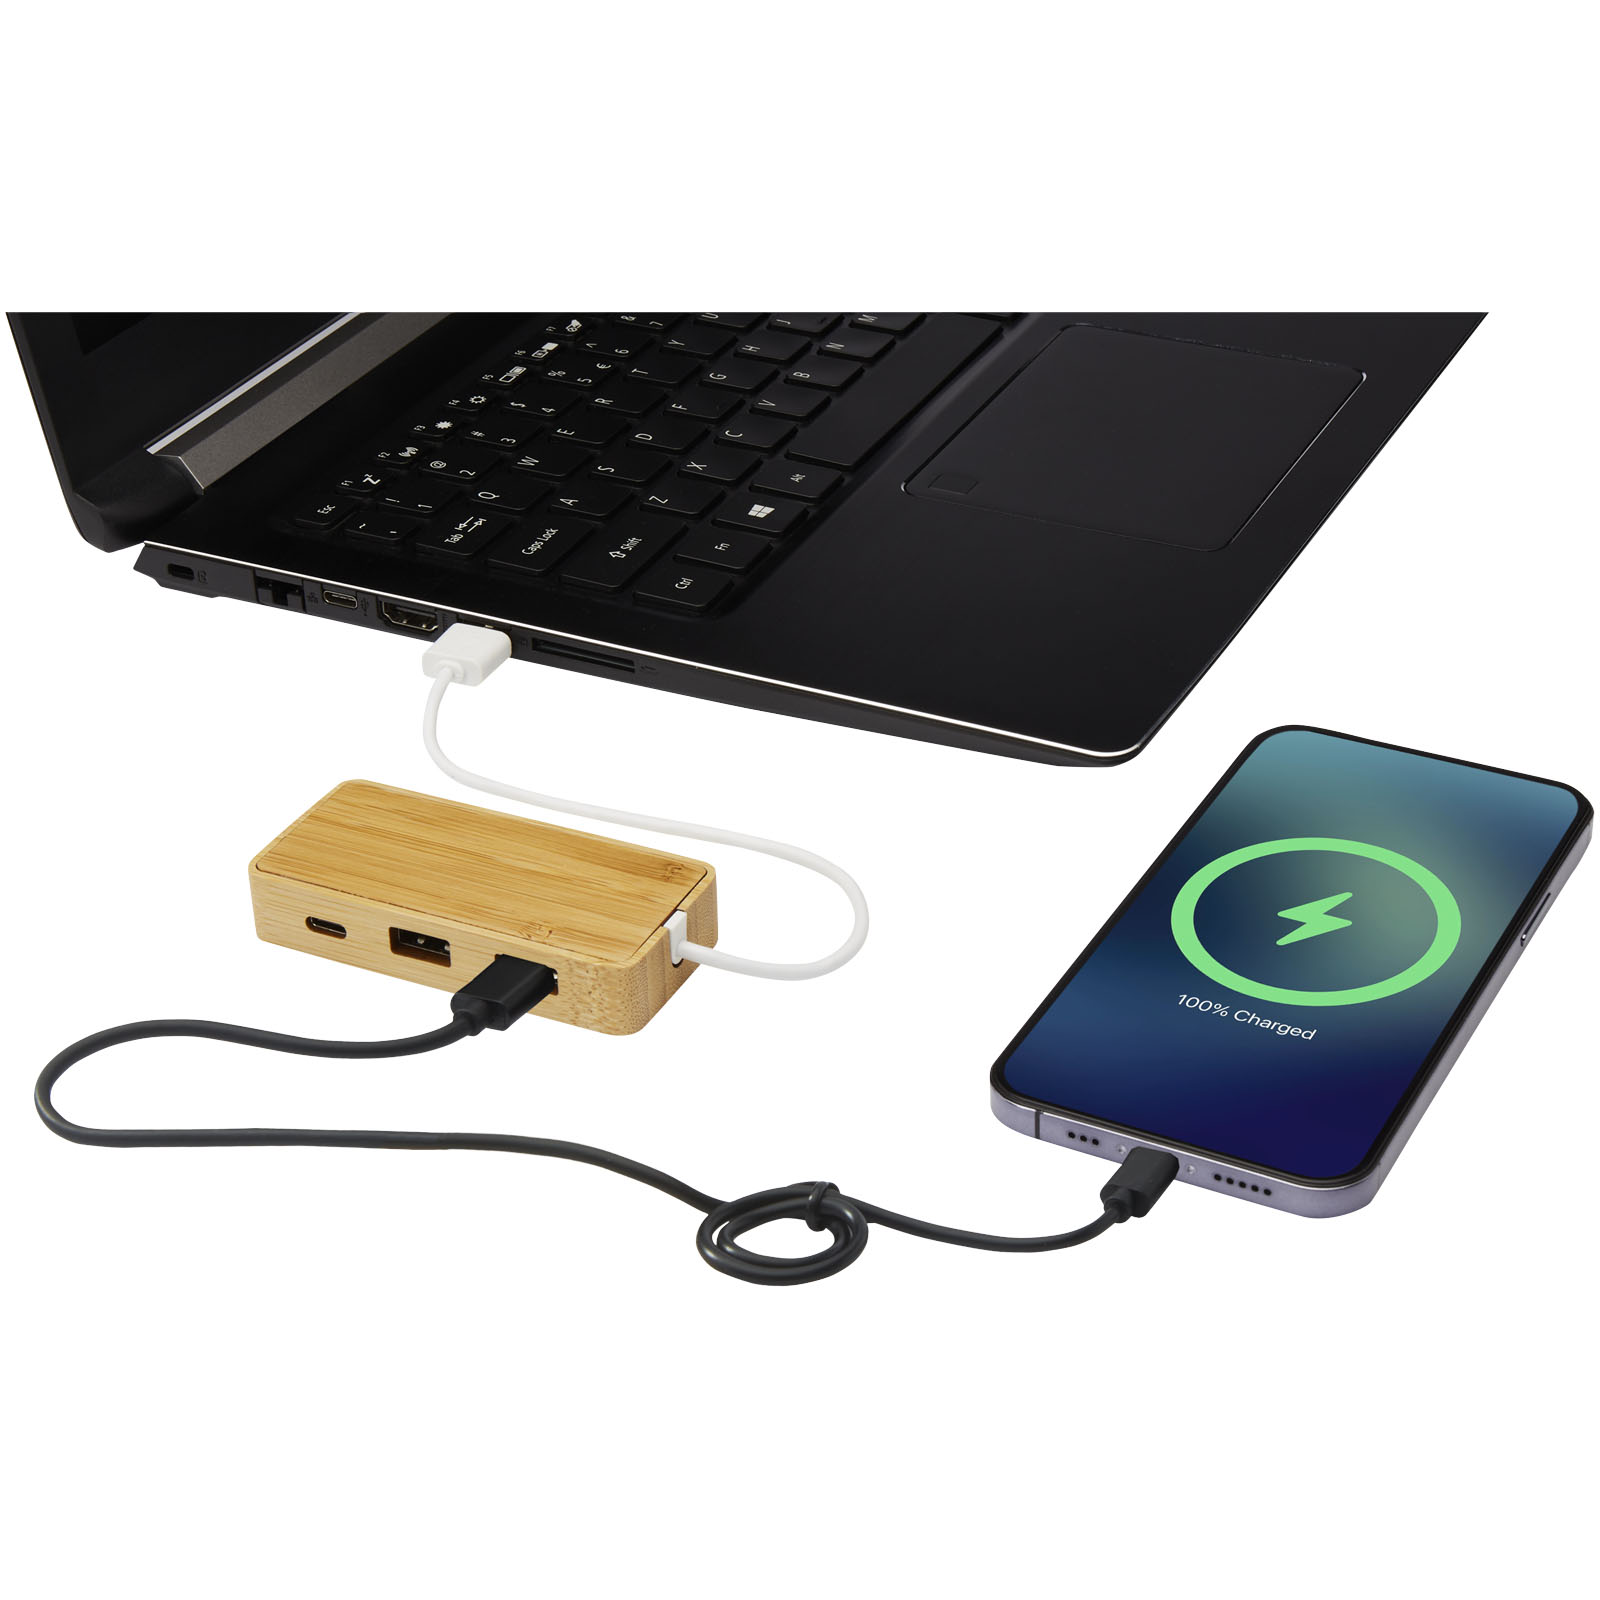 Accessoires pour ordinateur publicitaires - Hub USB Tapas en bambou - 4